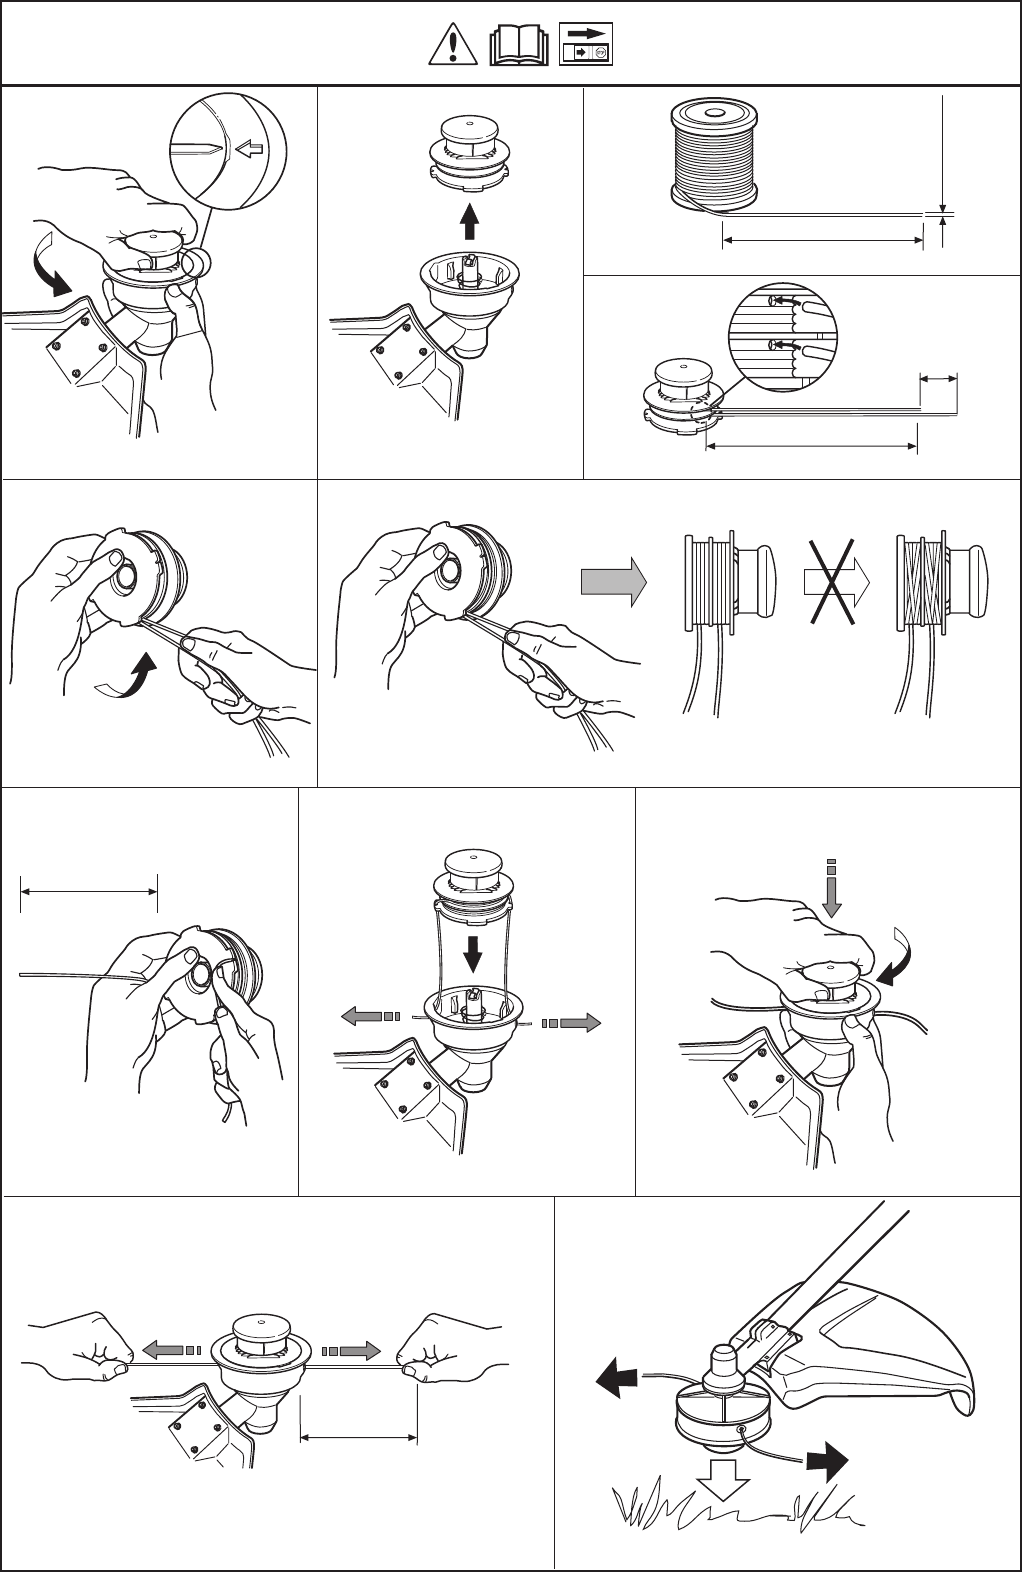 Как заправить леску в катушку триммера: инструкция по намотке